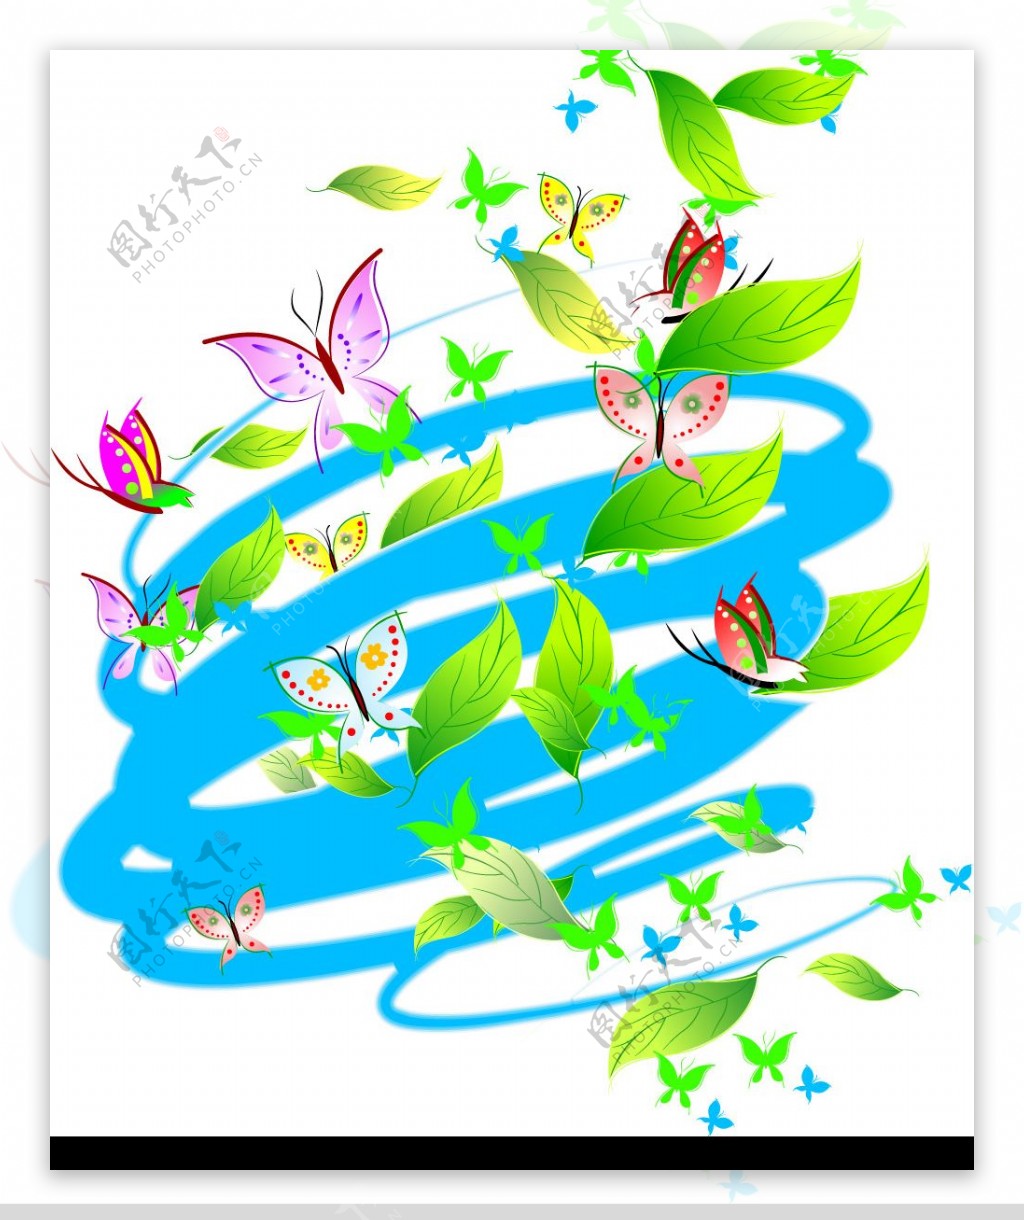 旋风树叶蝴蝶素材图片